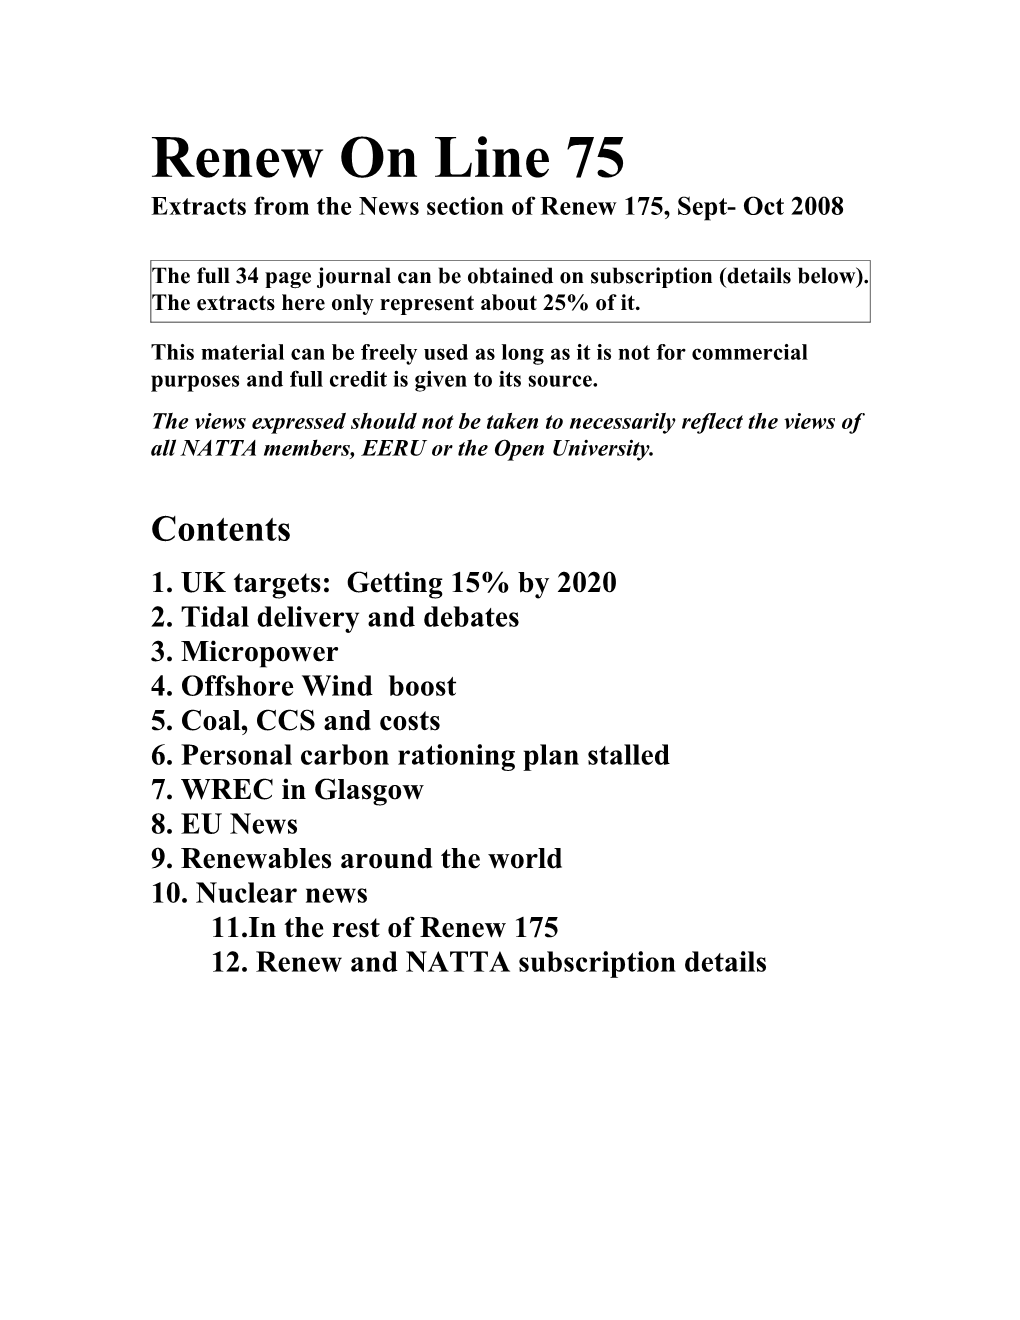 Renew on Line 75